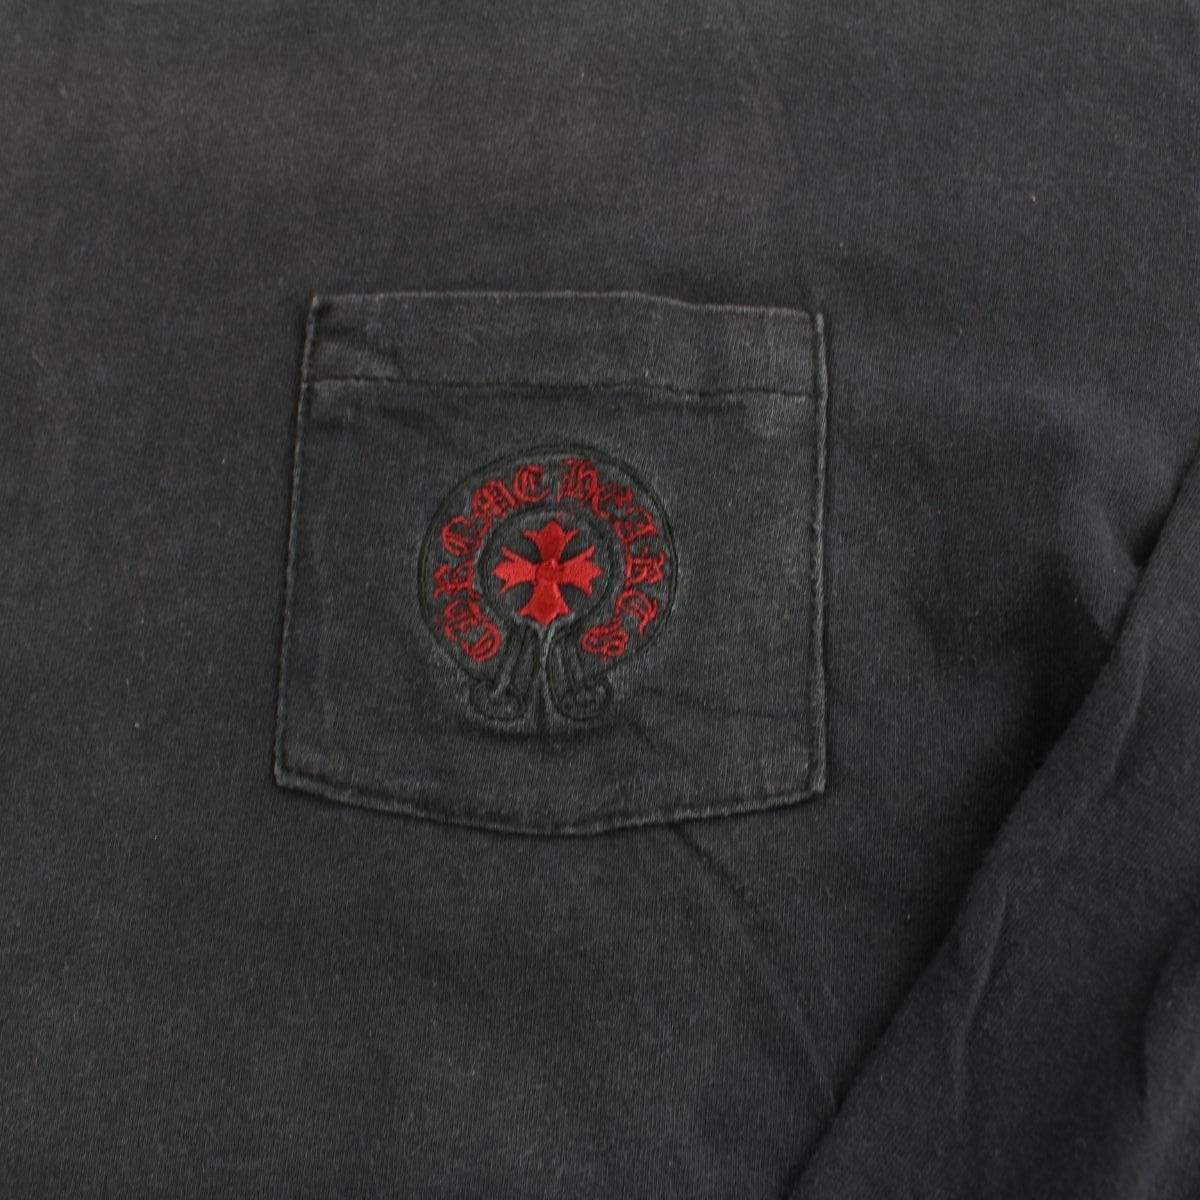 chrome hearts stitched red pocket logo ls black - SaruGeneral